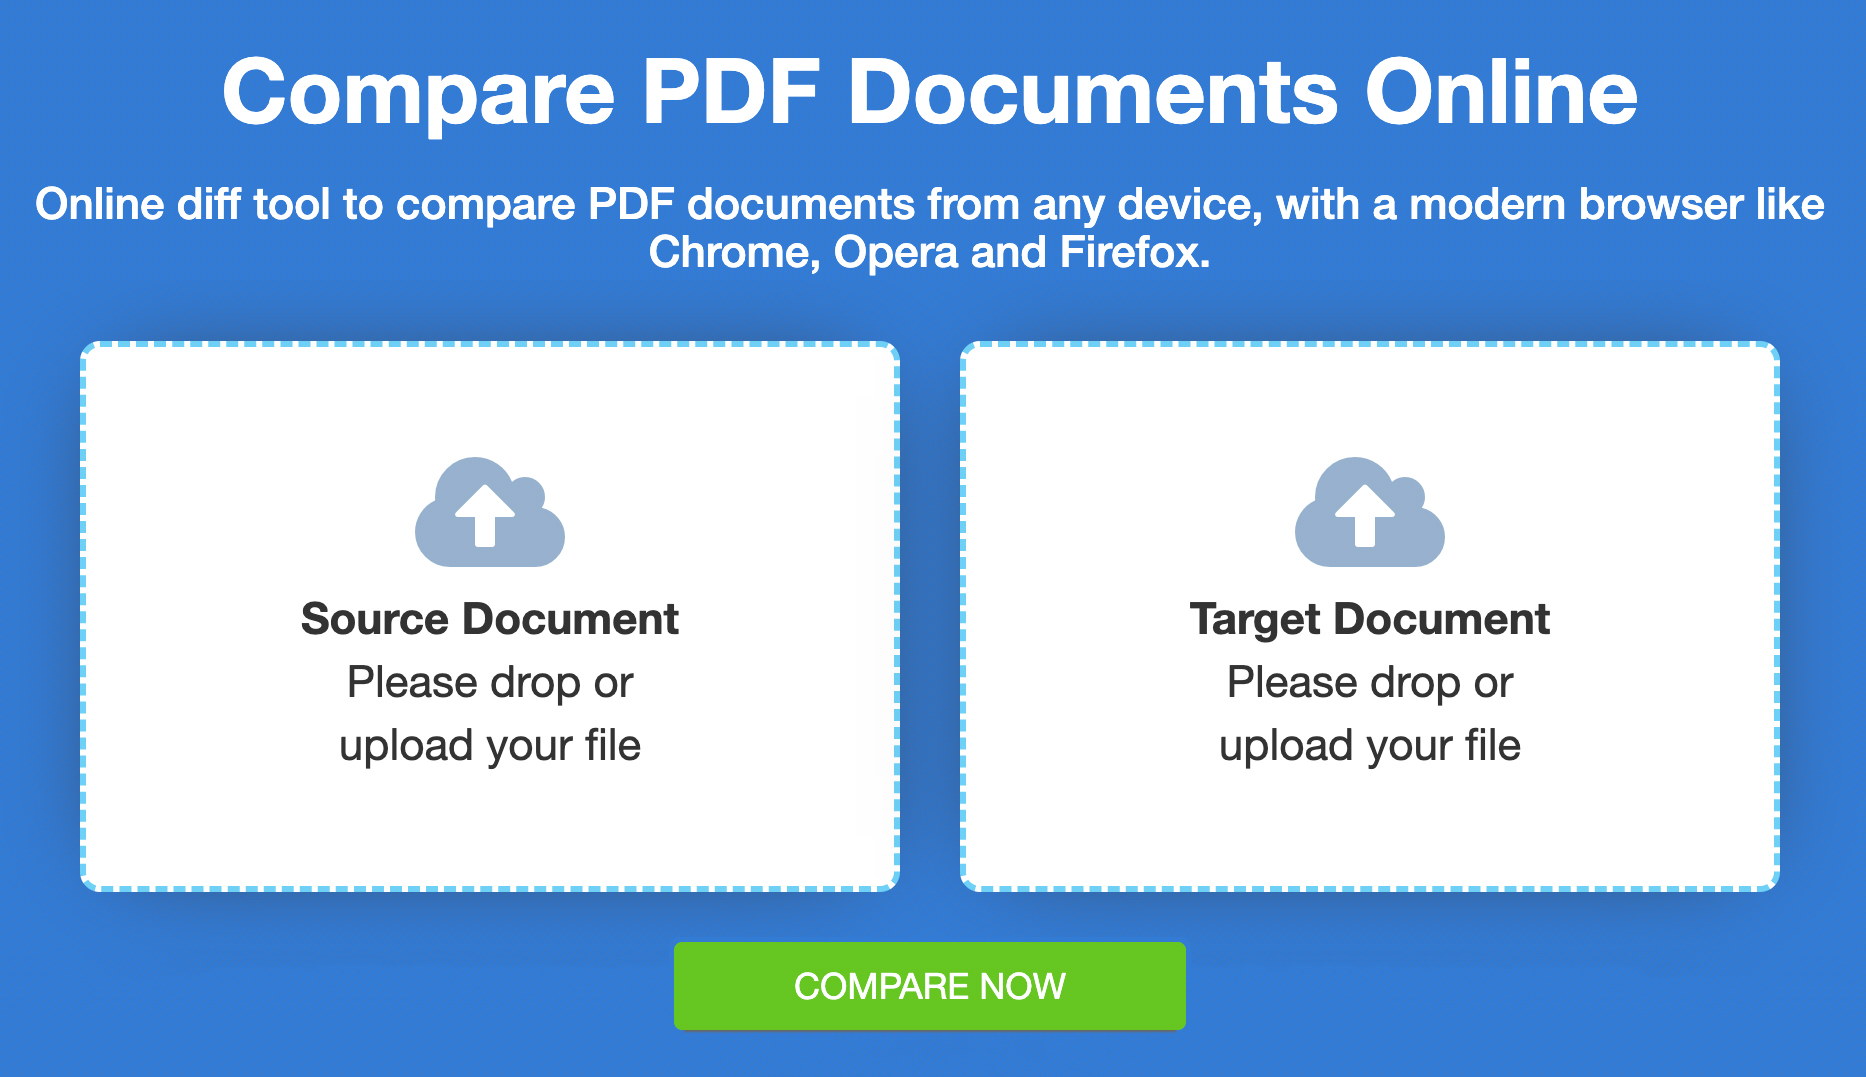 เปรียบเทียบไฟล์ PDF - เปรียบเทียบออนไลน์ฟรี